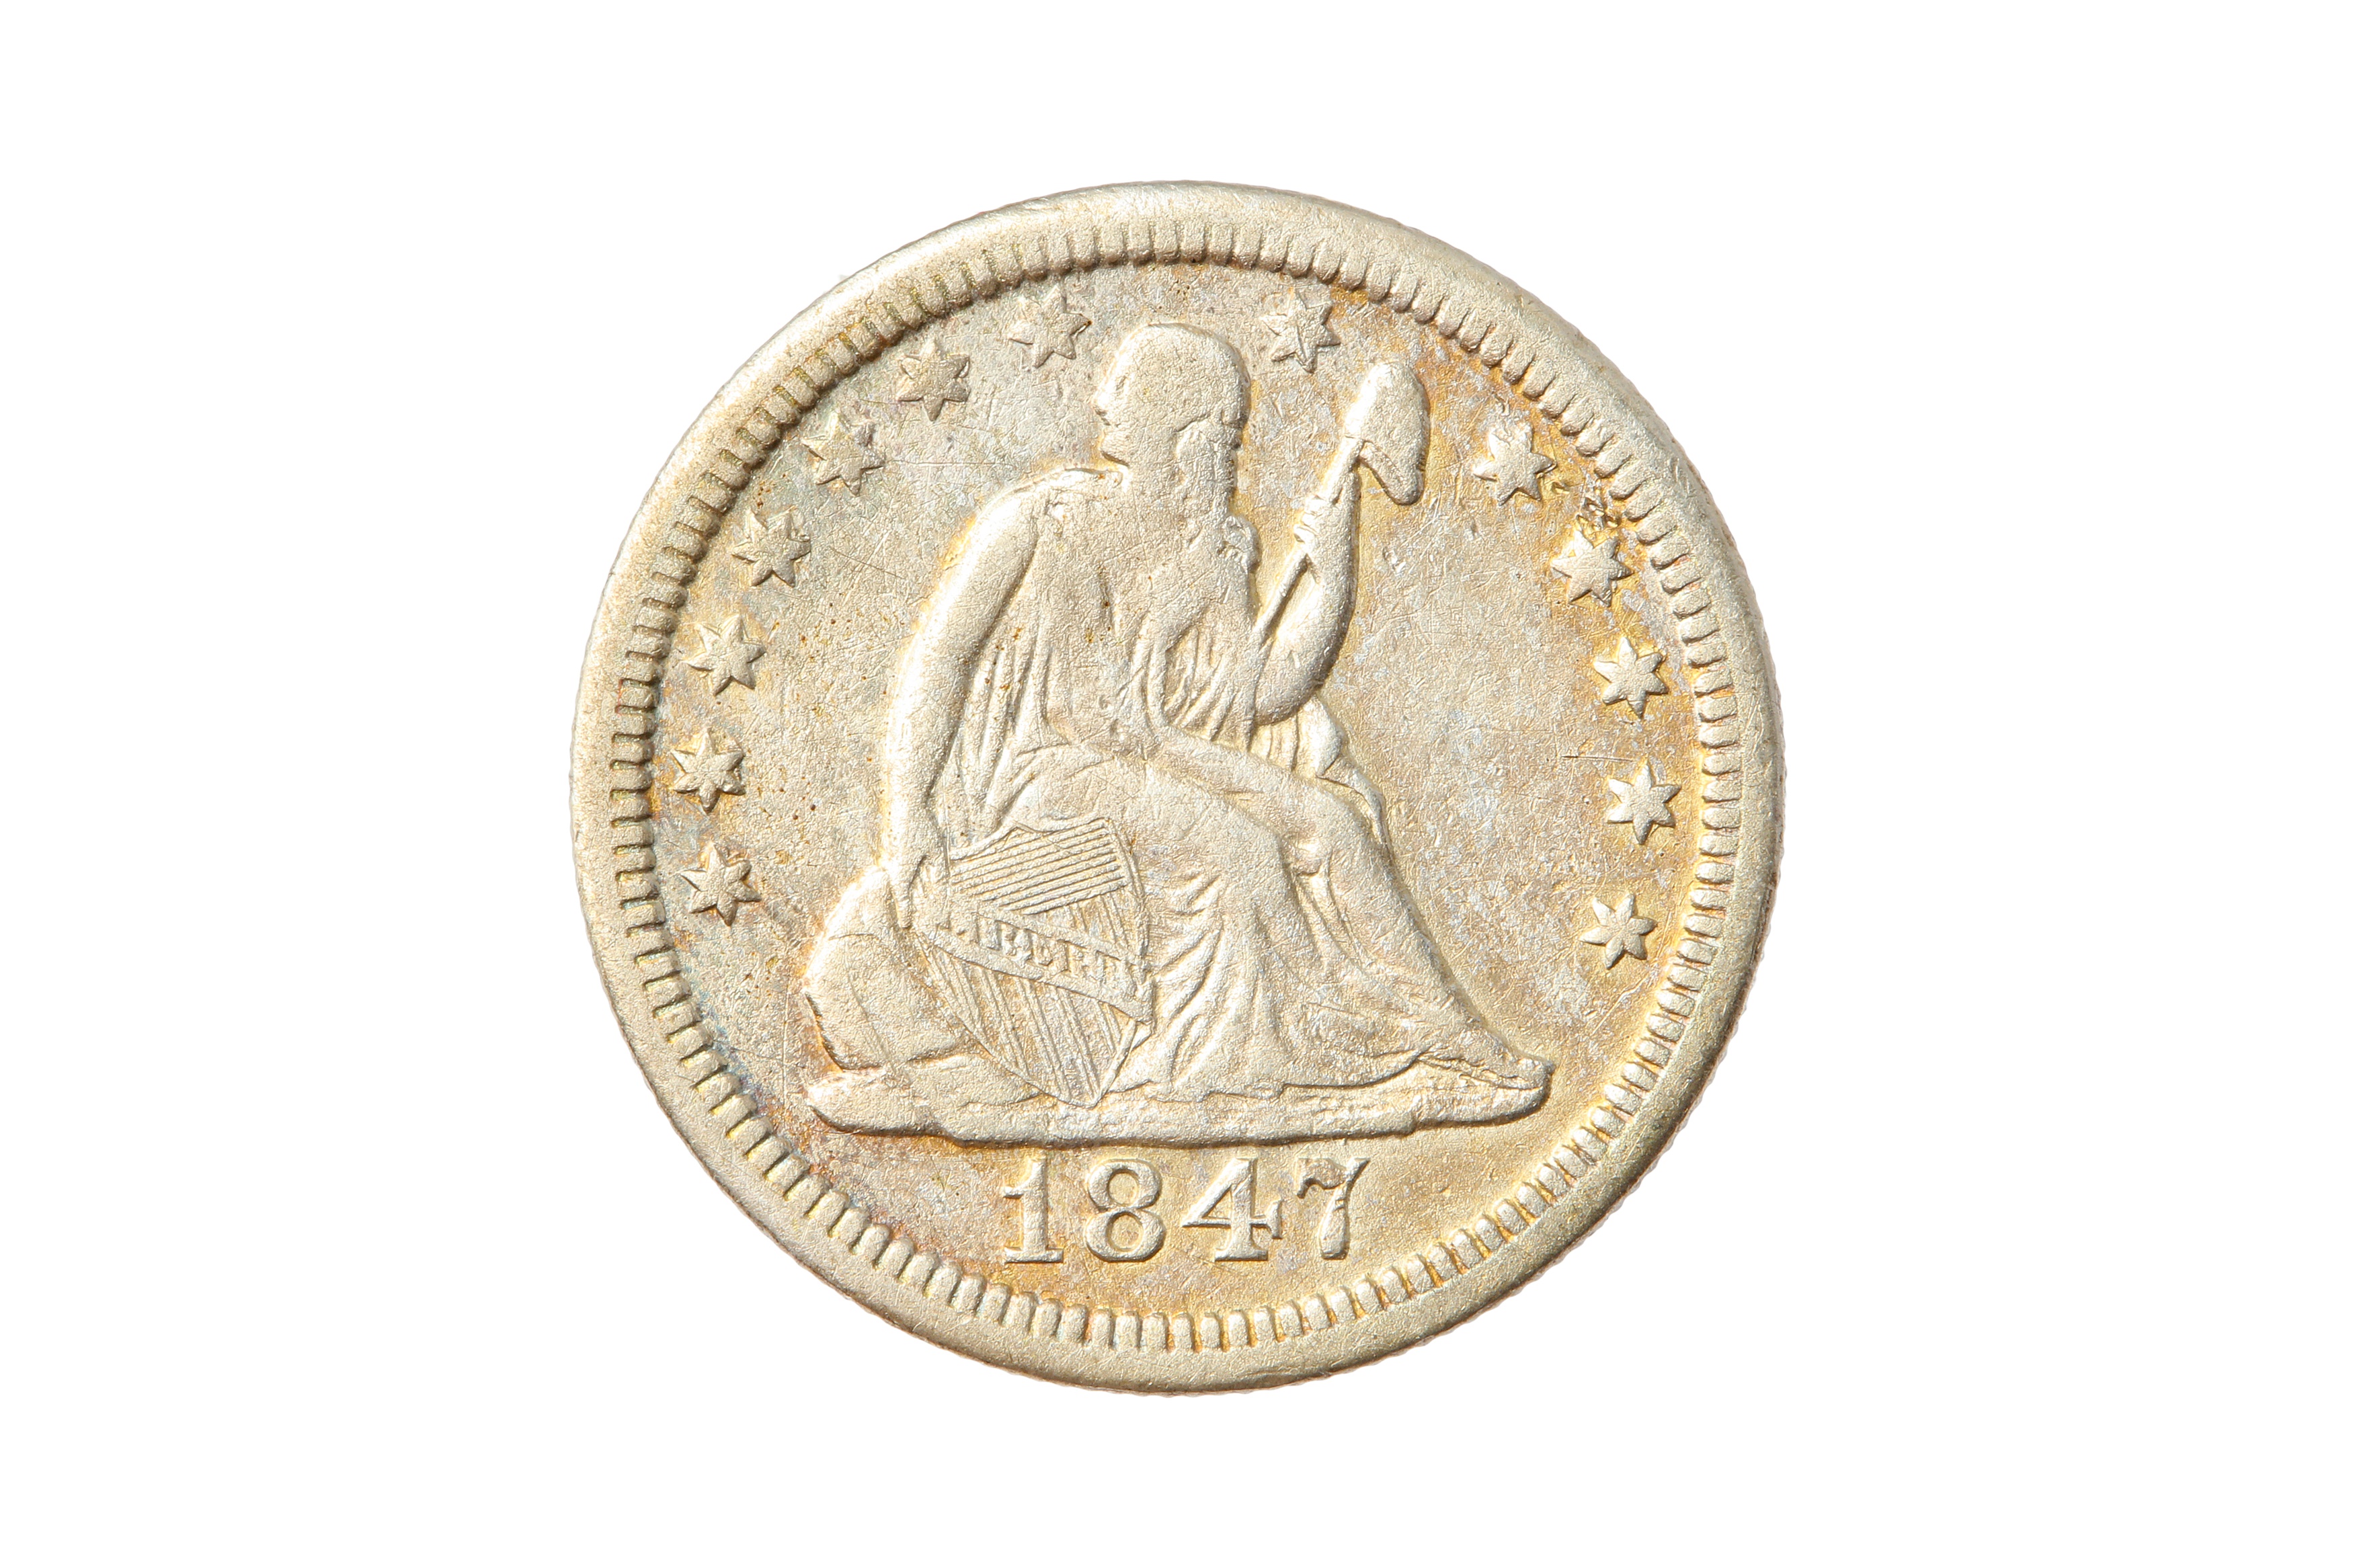 USA, 1847-O 25 CENTS/QUARTER DOLLAR.